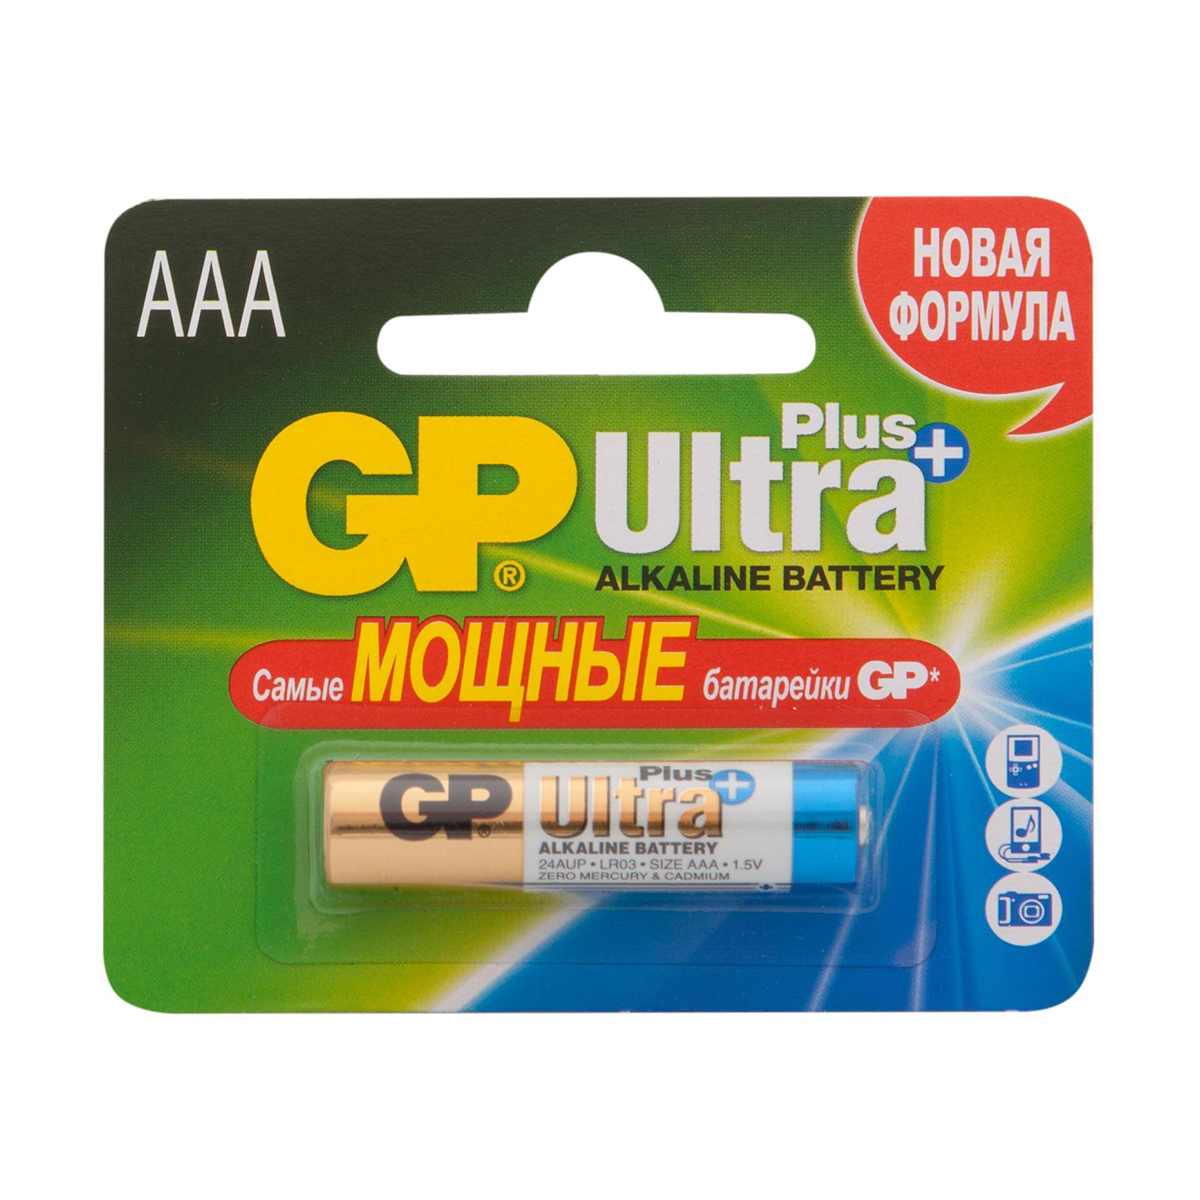 Батарейка GP Ultra Plus Alkaline 24AUP-2CR1, типоразмер ААА, 1 шт прокладки always ultra super plus 32 шт